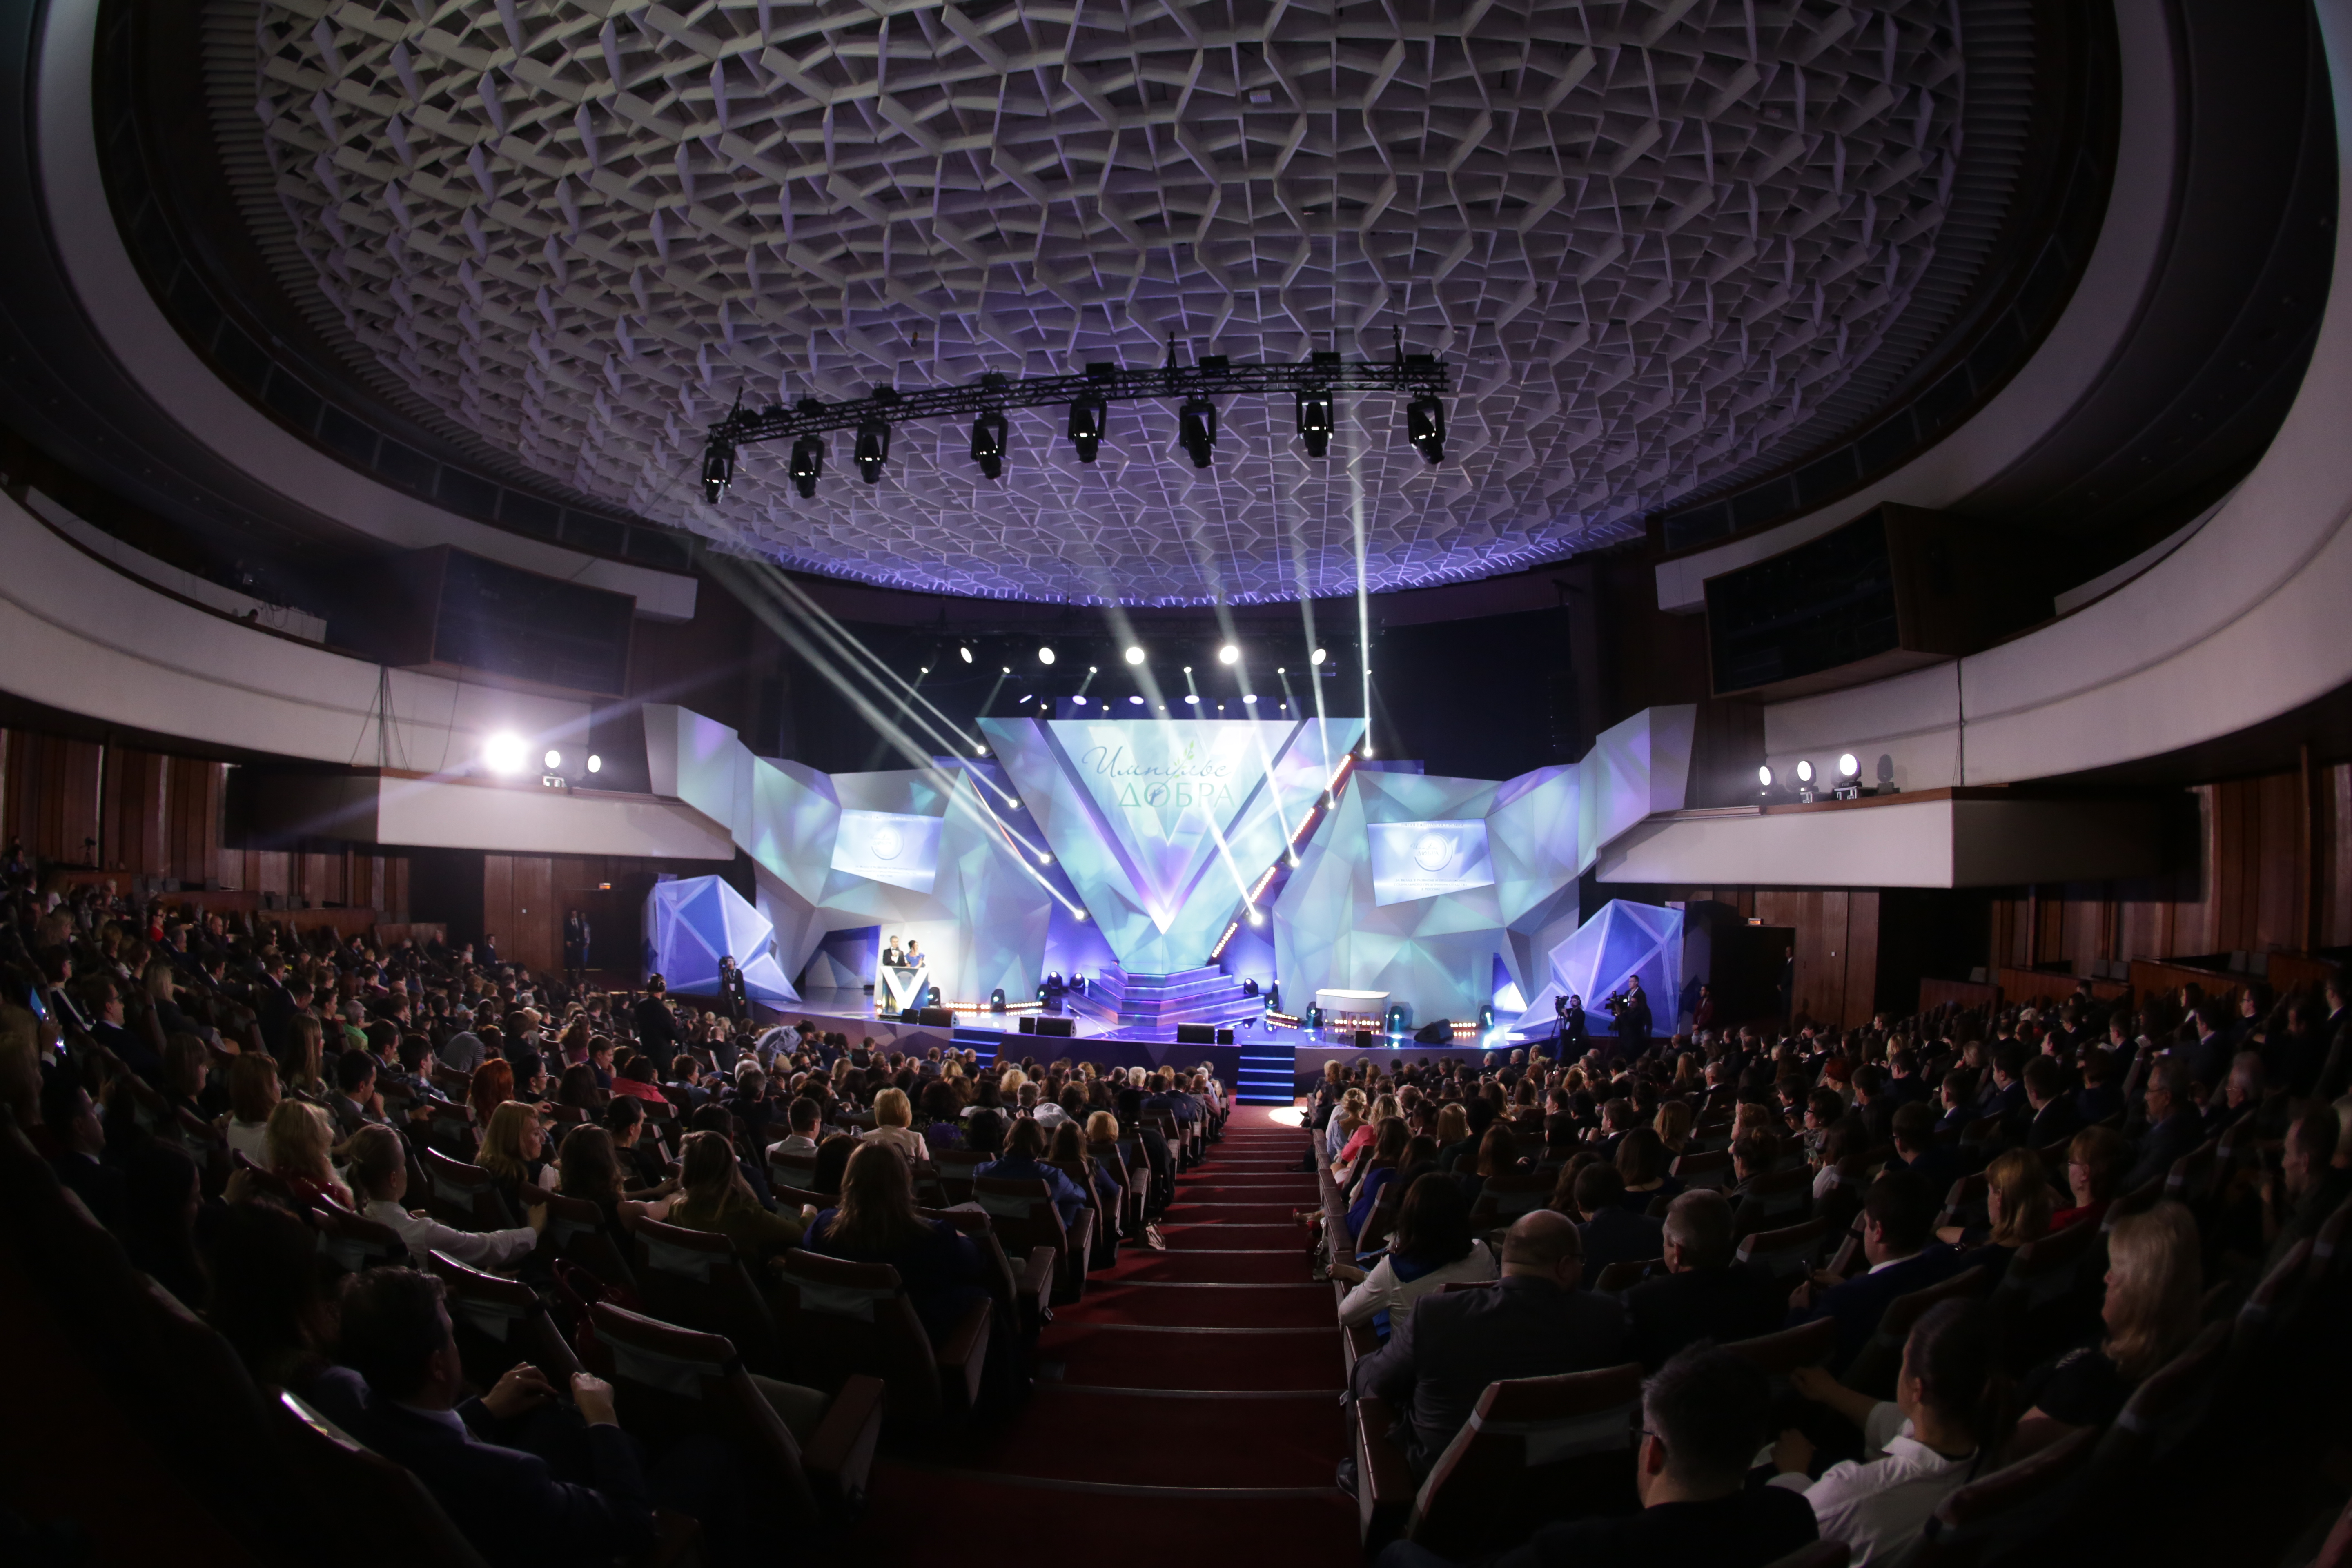 концертный зал правительства москвы новый арбат